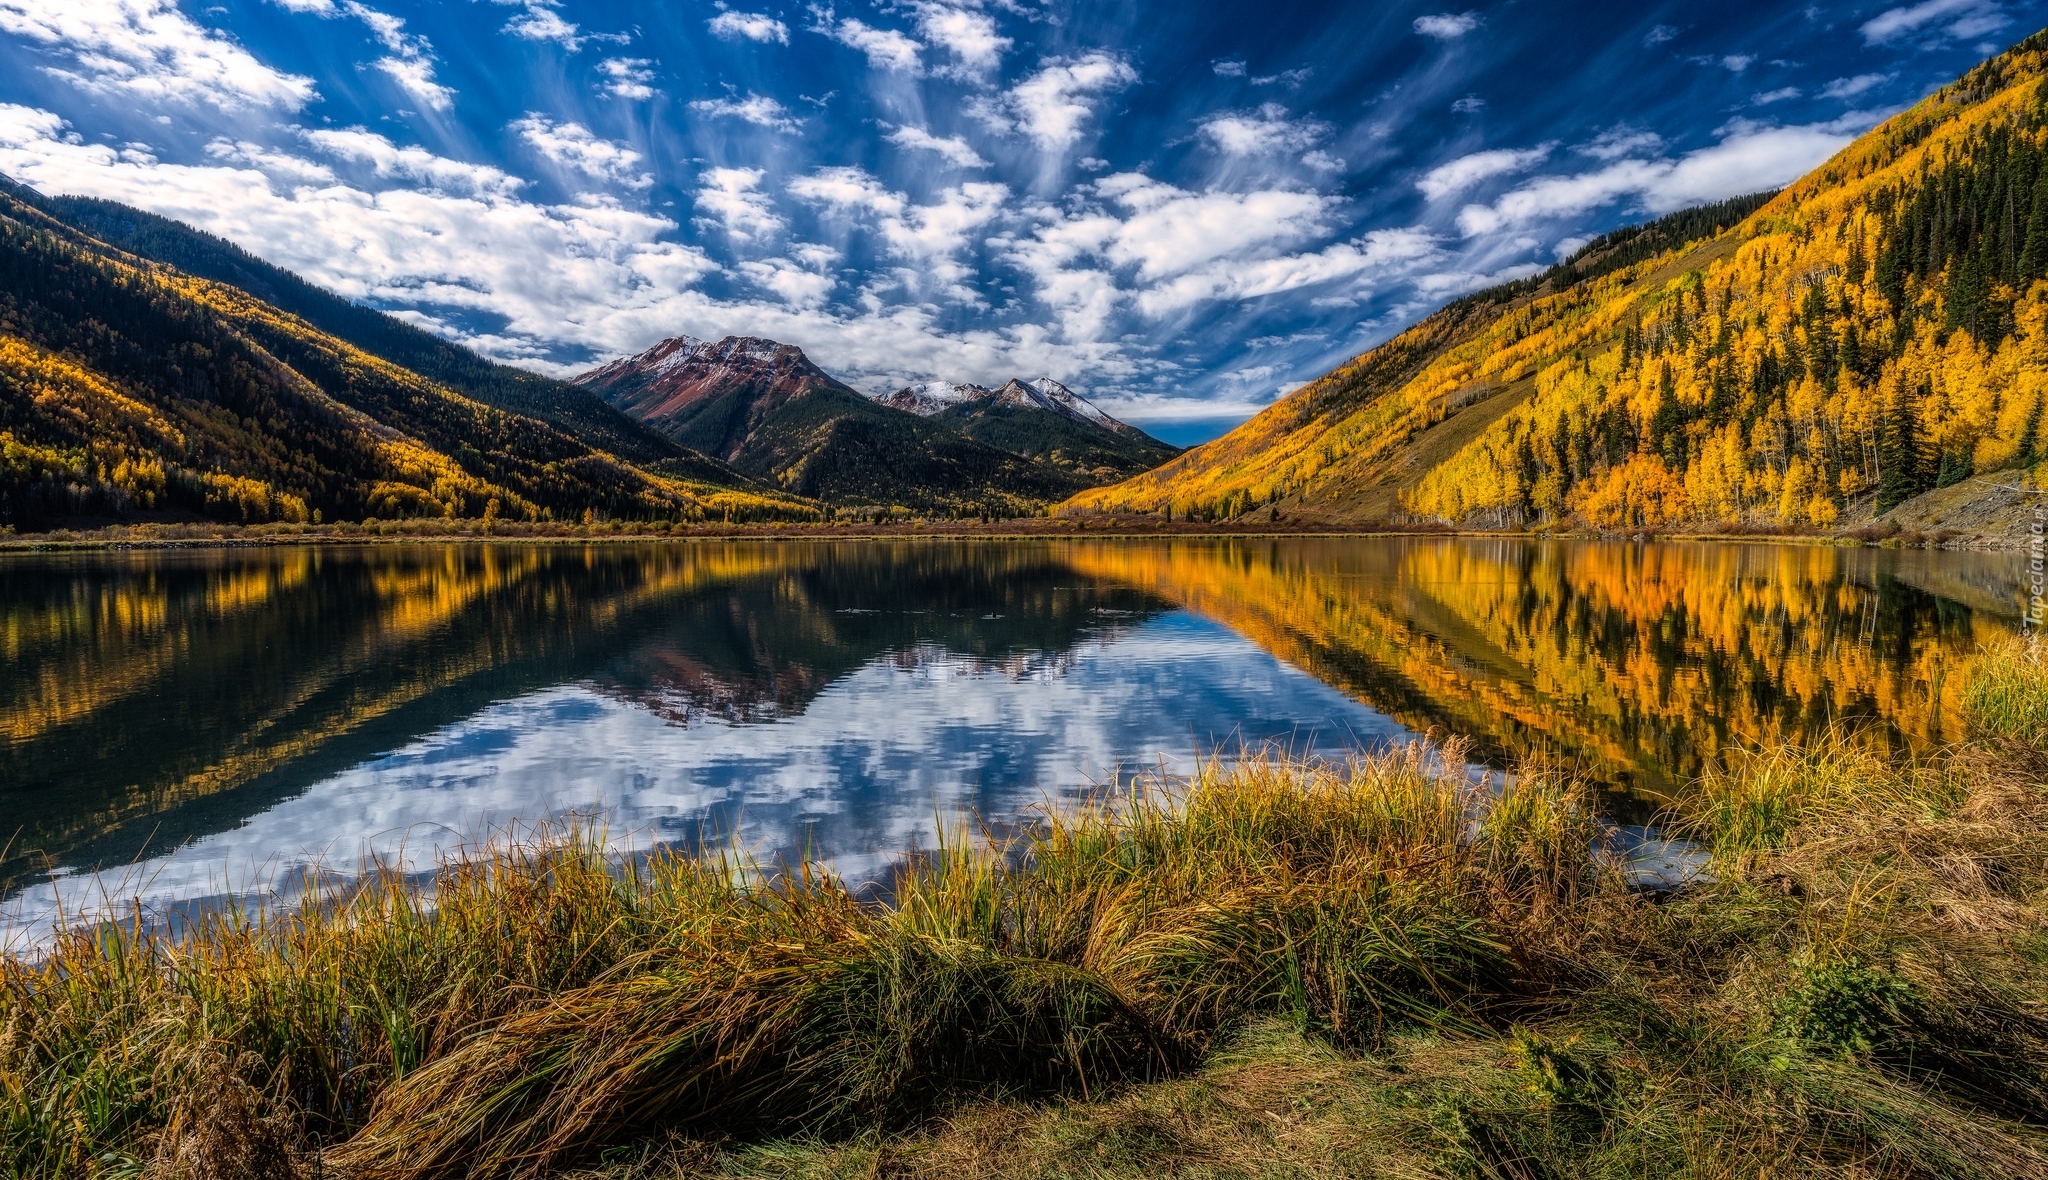 Jezioro Maroon Lake, Zbocza, Góry, Szczyty Maroon Bells, Drzewa, Aspen, Kolorado, Stany Zjednoczone